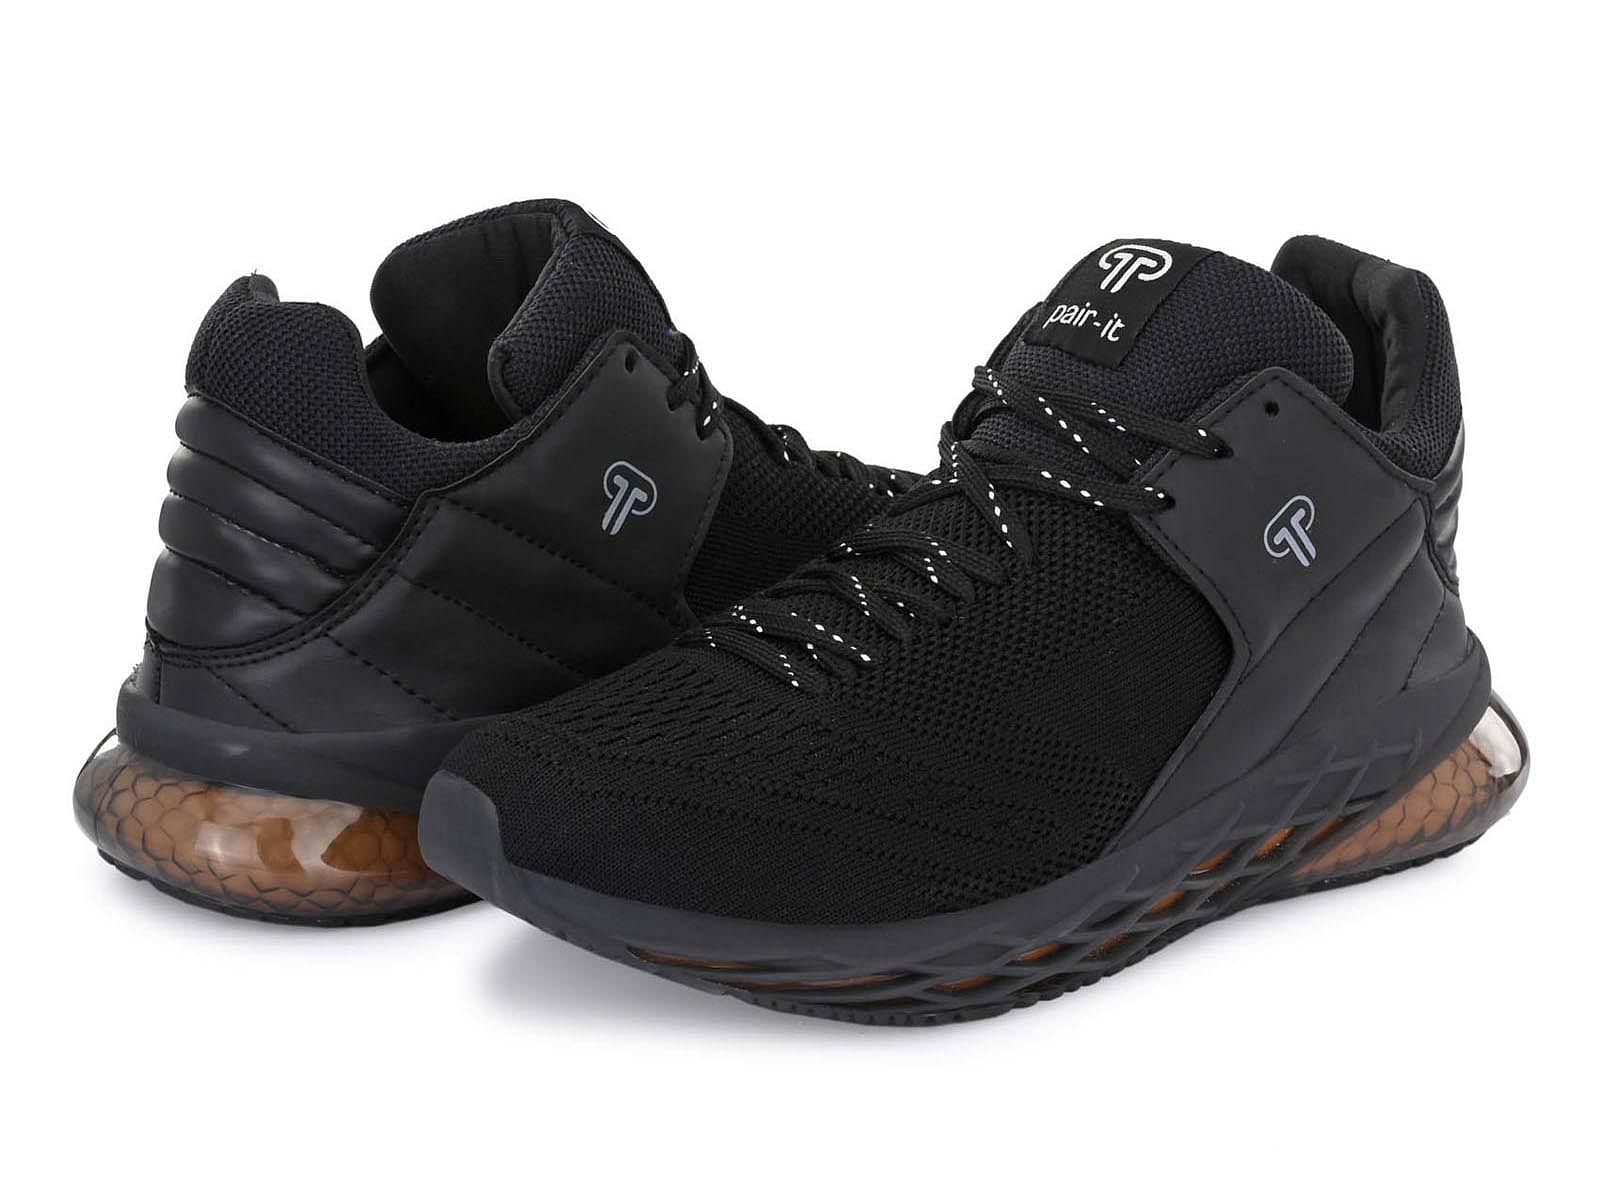 Pair-it Men's Sports Shoes - Black - LZ-SPORTS024